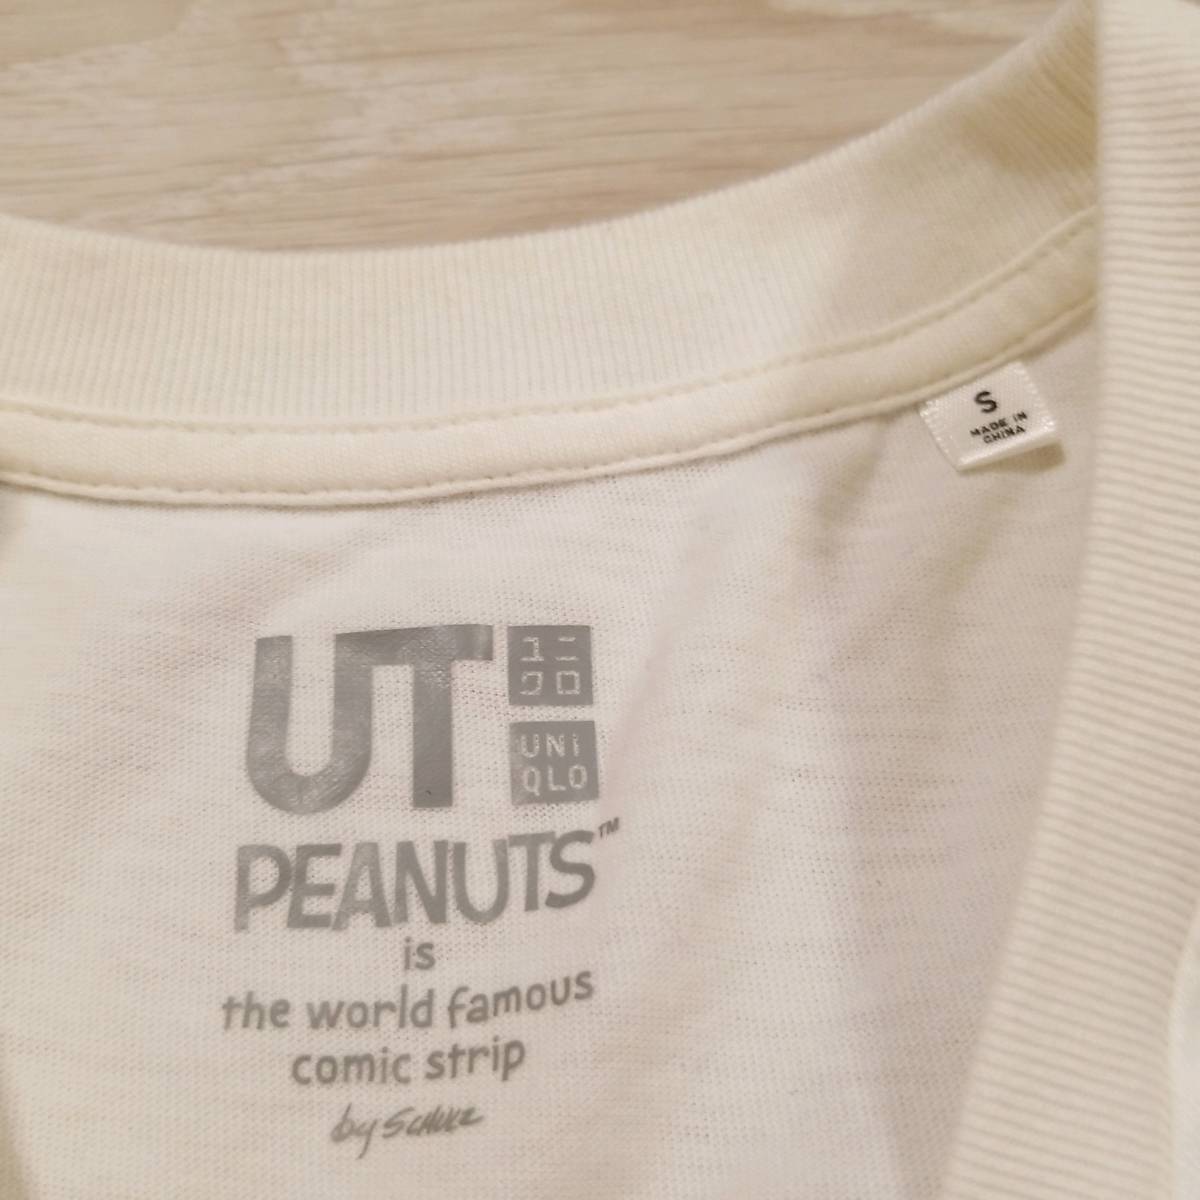 K196 UNIQLO ユニクロ スヌーピー peanuts グラフィック Tシャツ S キャラクター カットソー 半袖 白系 綿100% コットン.._画像2